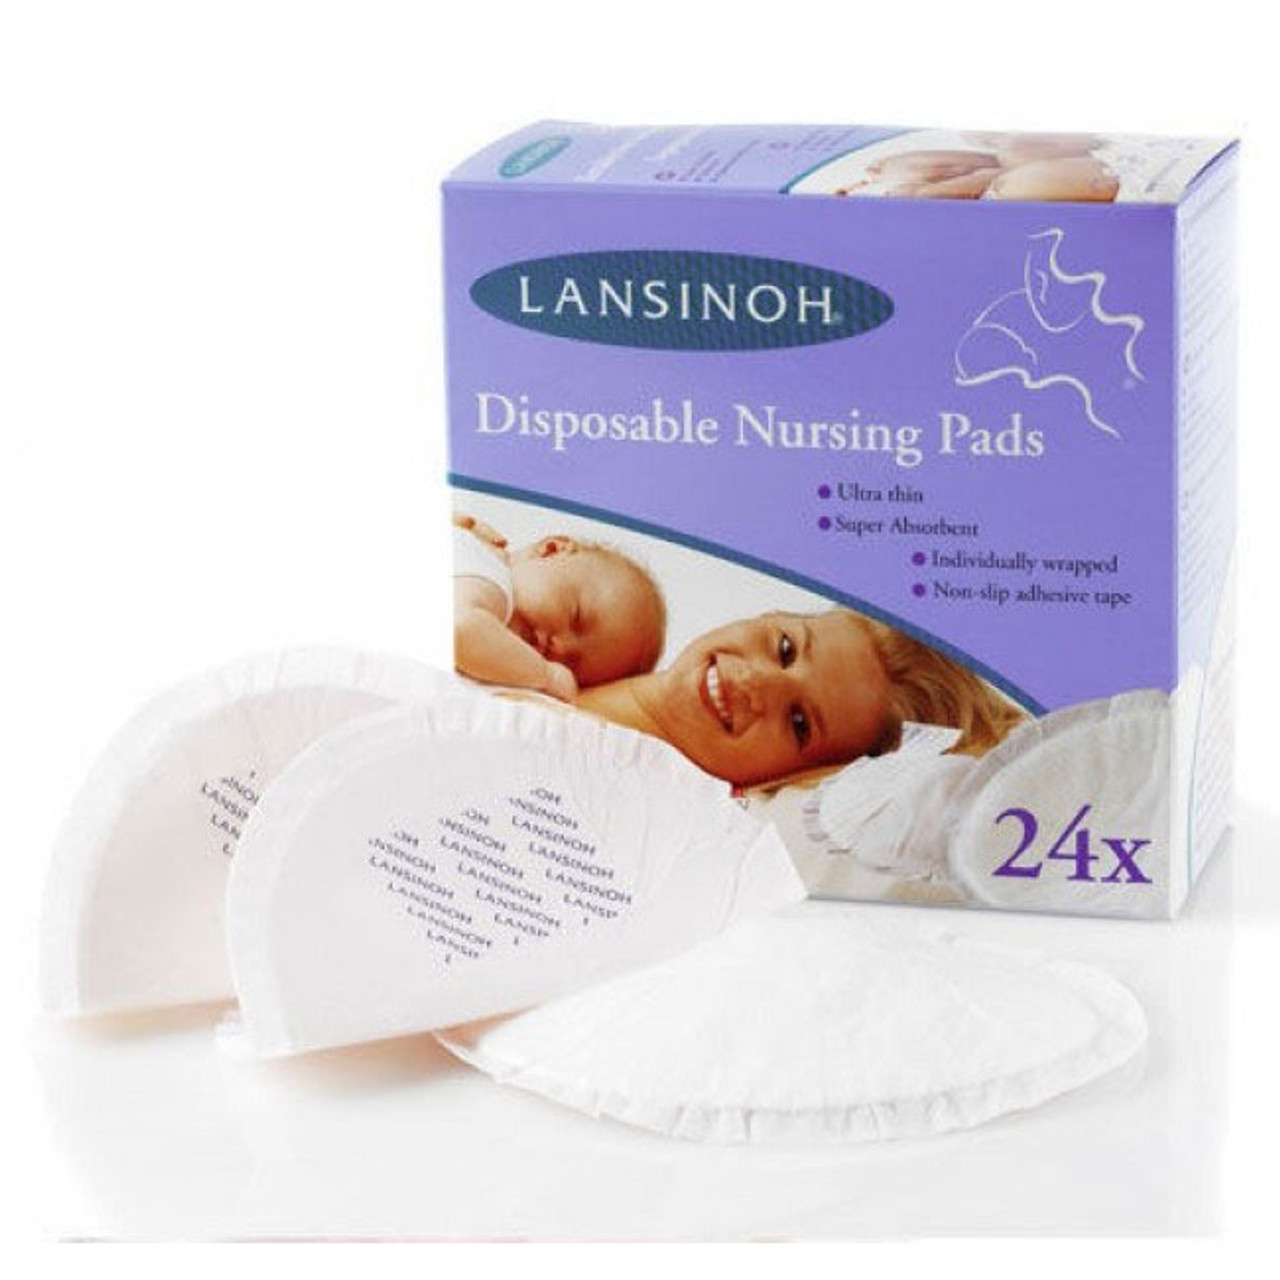 Lansinoh Disposable Nursing Pads - 24